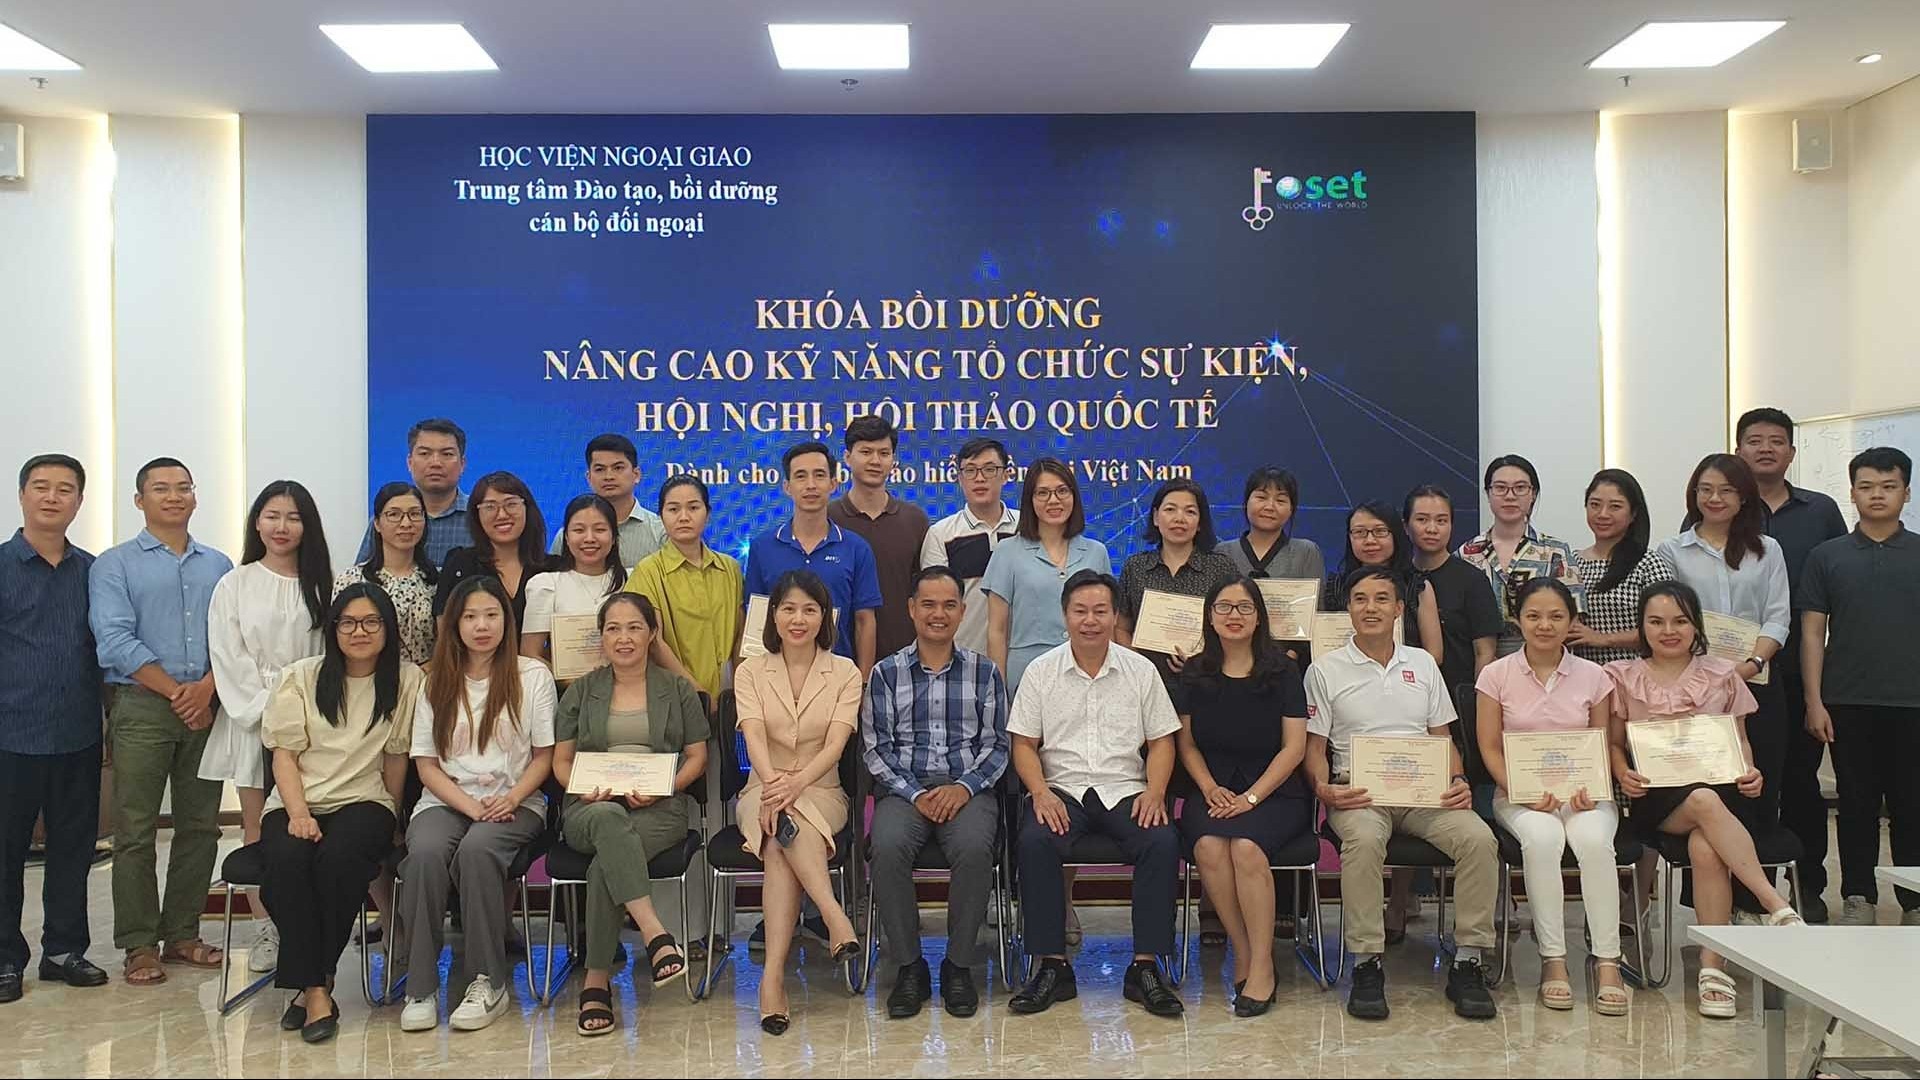 Khóa bồi dưỡng nâng cao kỹ năng tổ chức sự kiện, hội nghị, hội thảo quốc tế dành cho cán bộ của Bảo hiểm tiền gửi Việt Nam